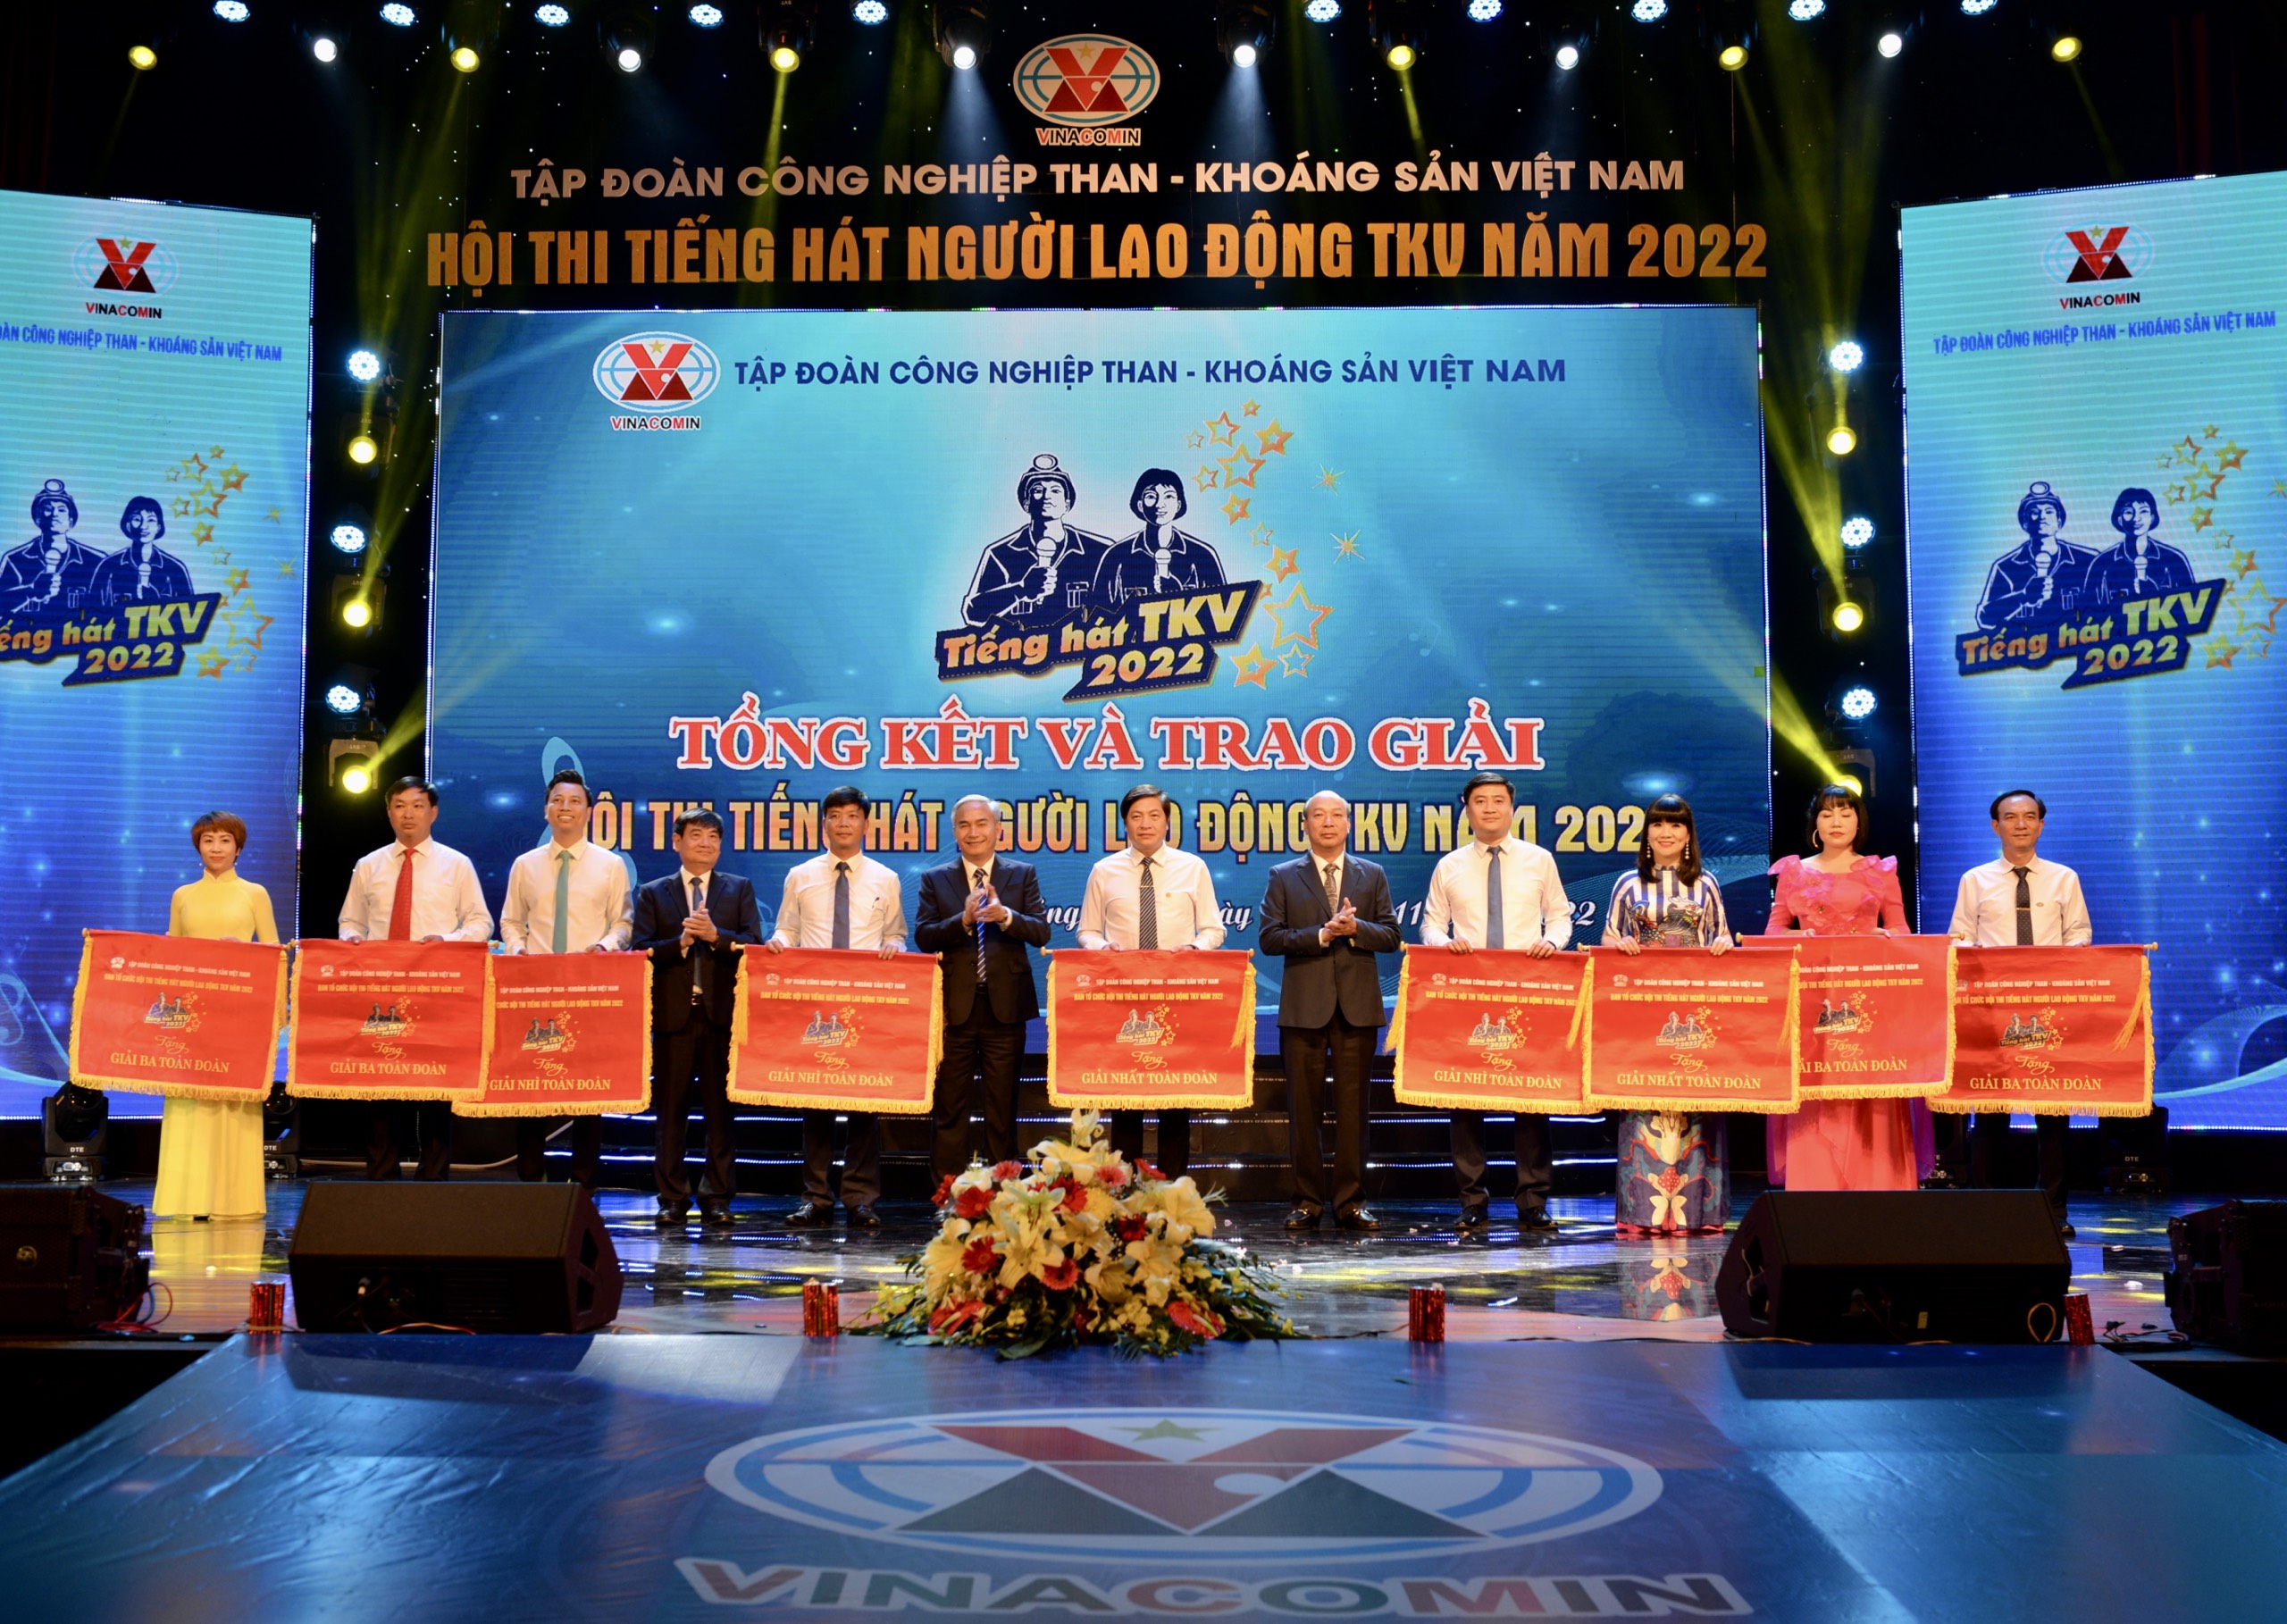 Lãnh đạo Tập đoàn Công nghiệp Than - Khoáng sản Việt Nam trao giải toàn đoàn cho các đơn vị.